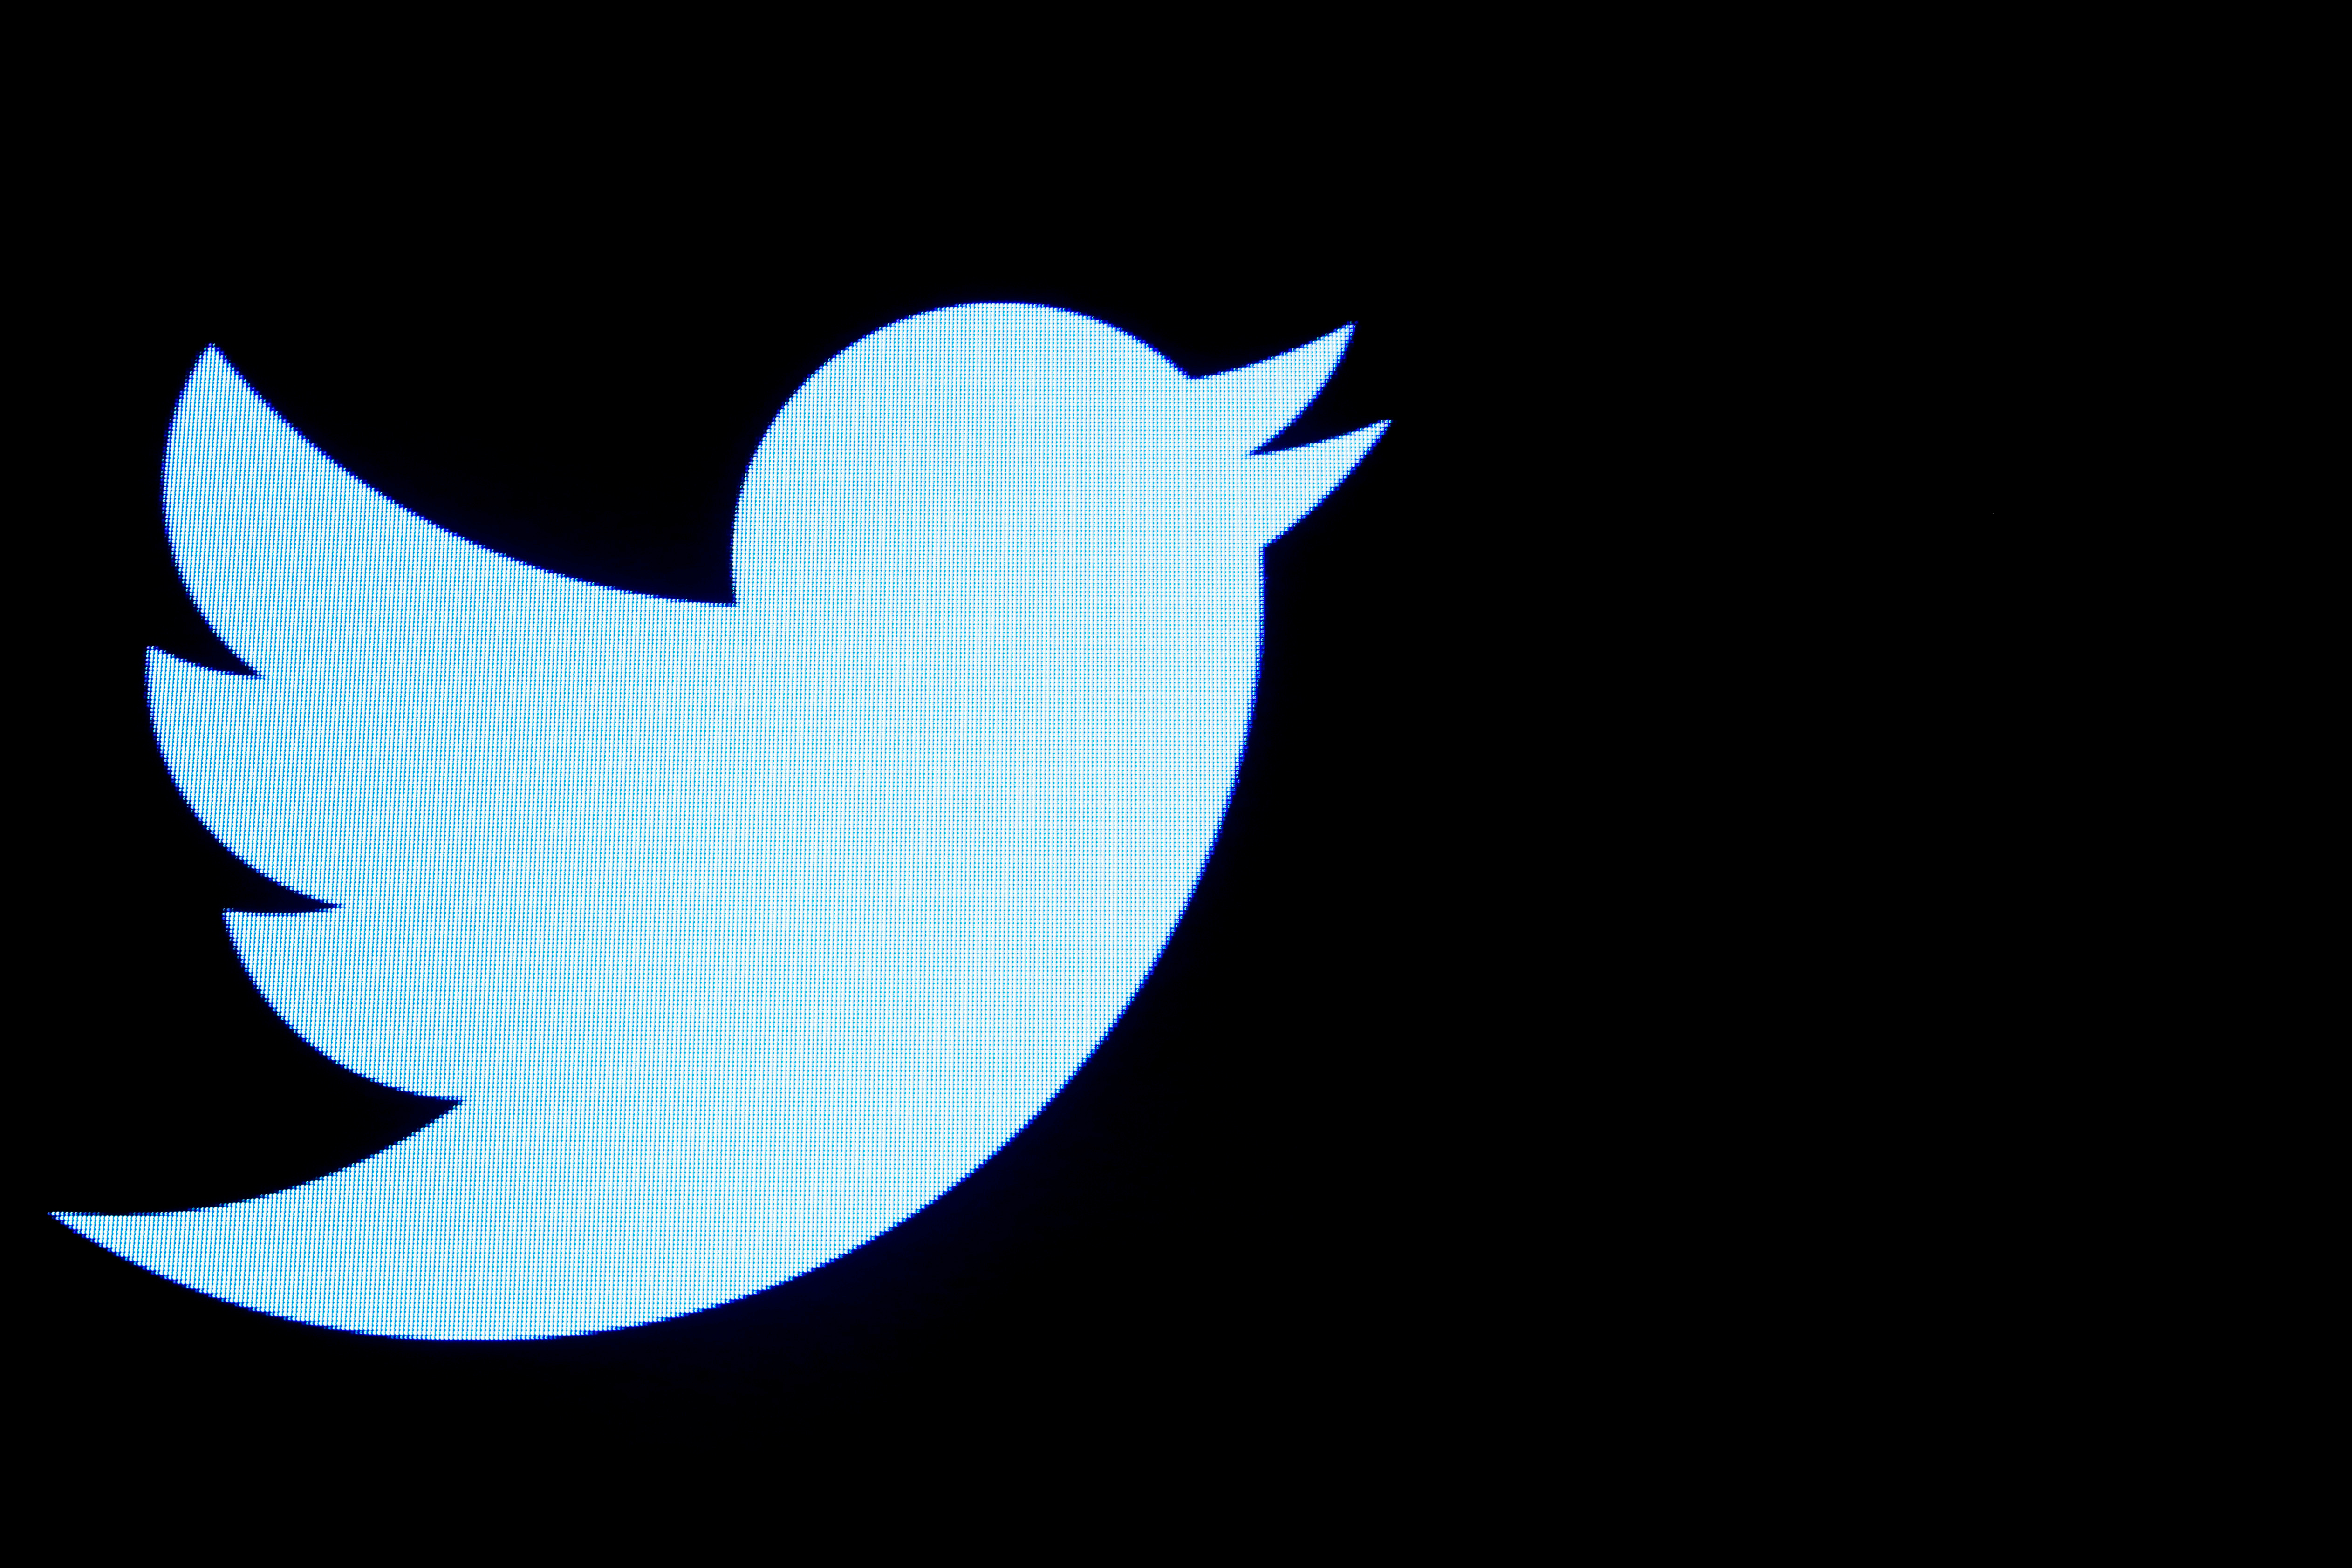 Bénéfice triplé, nombre d'utilisateurs réguliers en hausse, Twitter affiche sa bonne santé